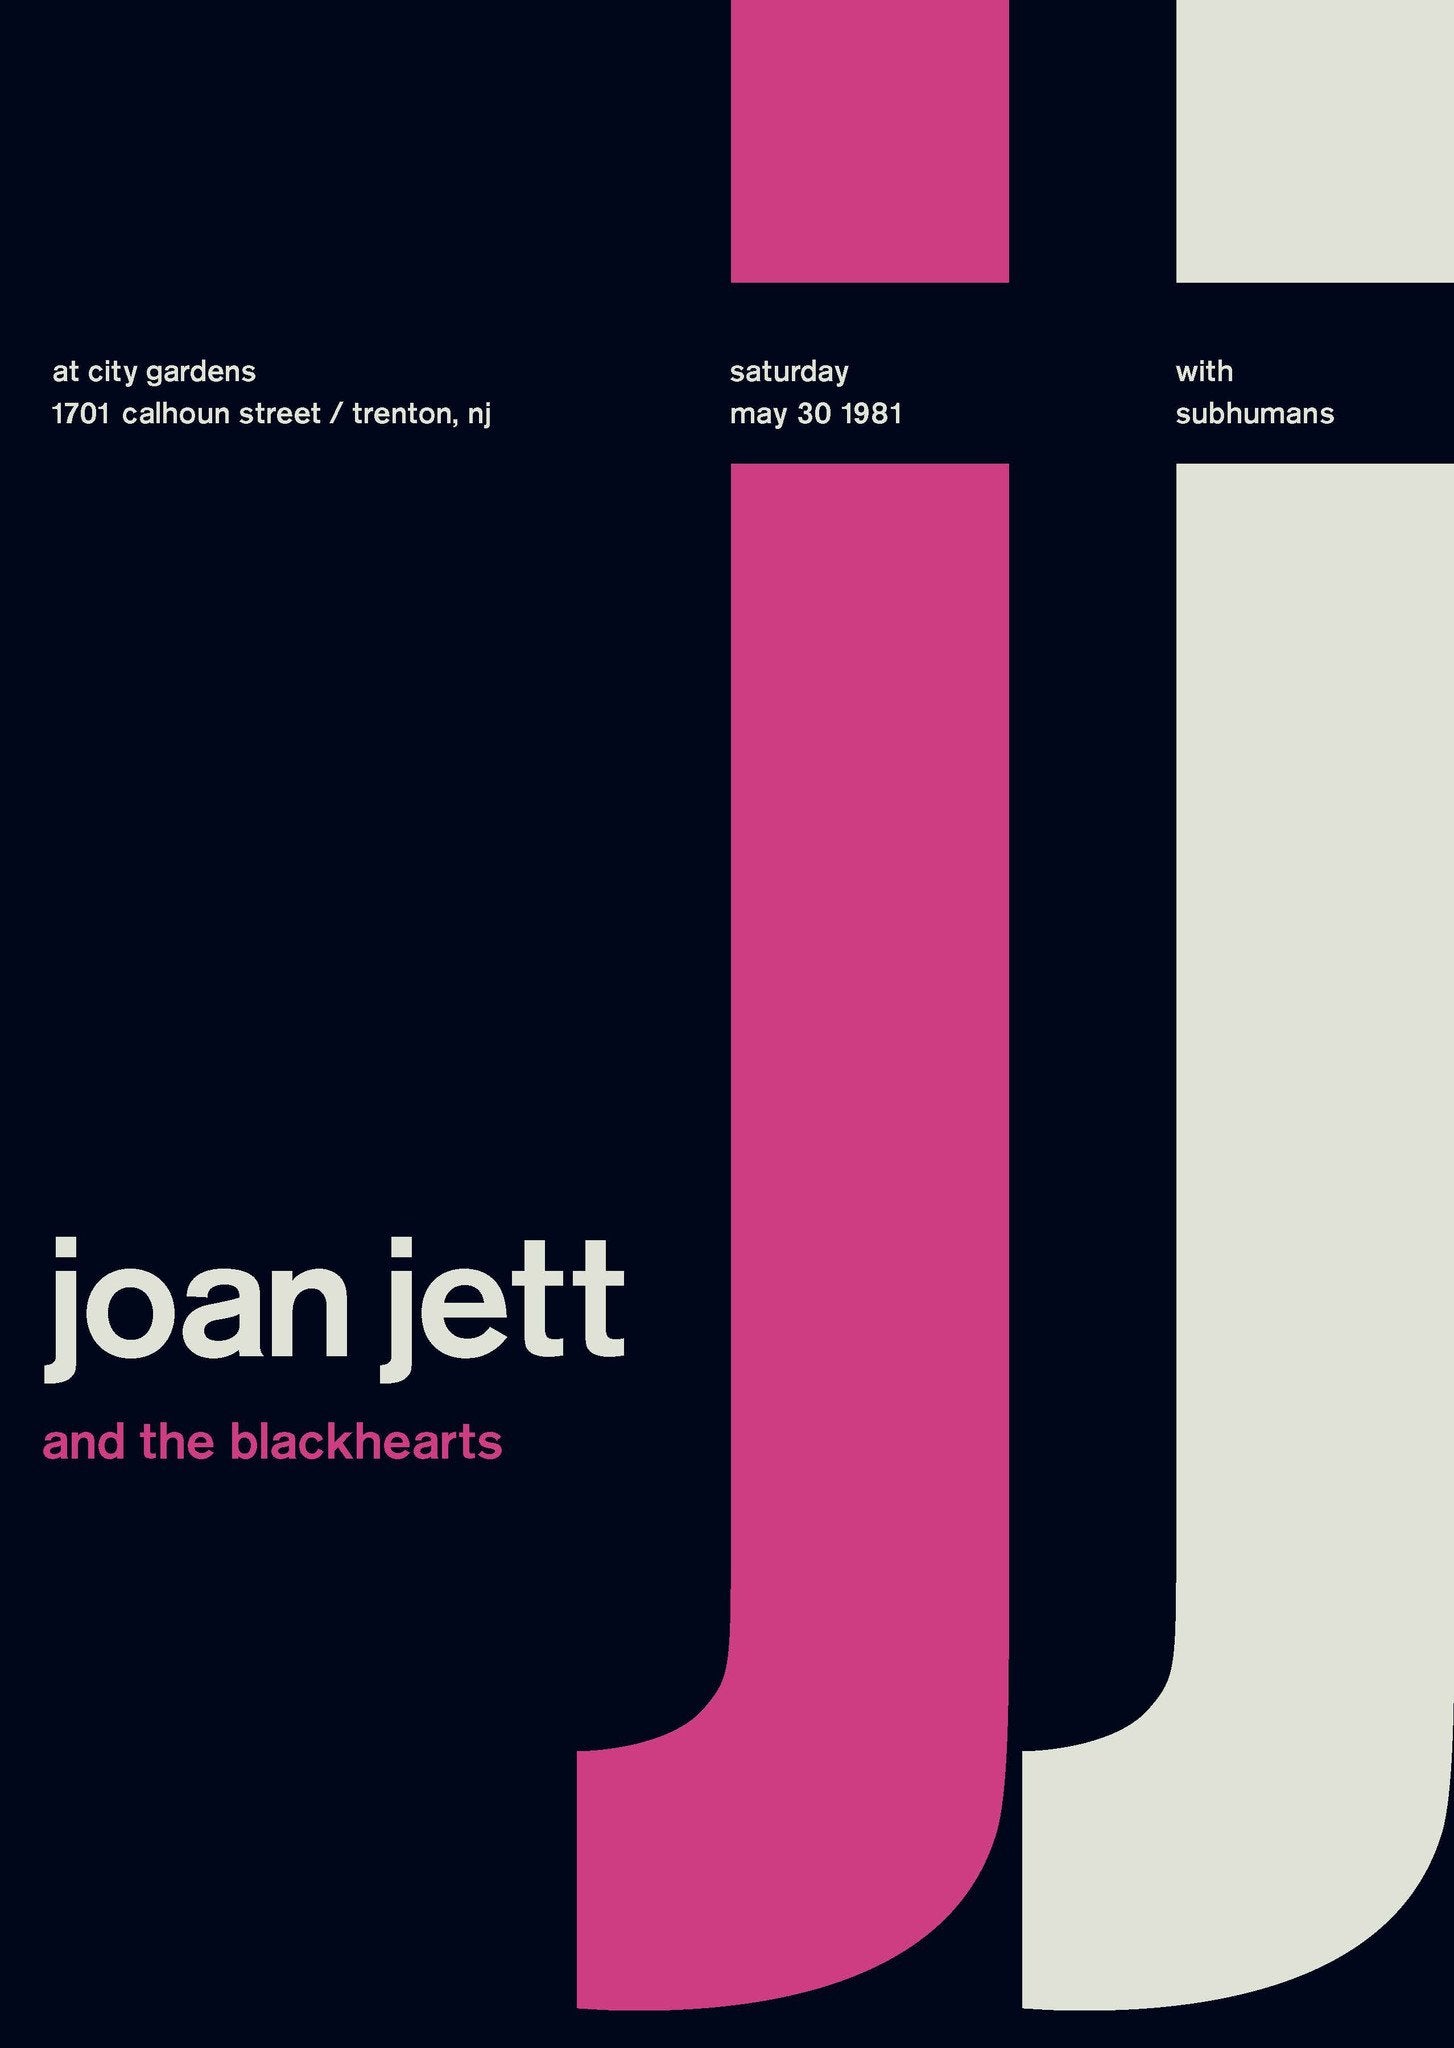 Joan Jett and The Blackhearts at City Gardens, 1981